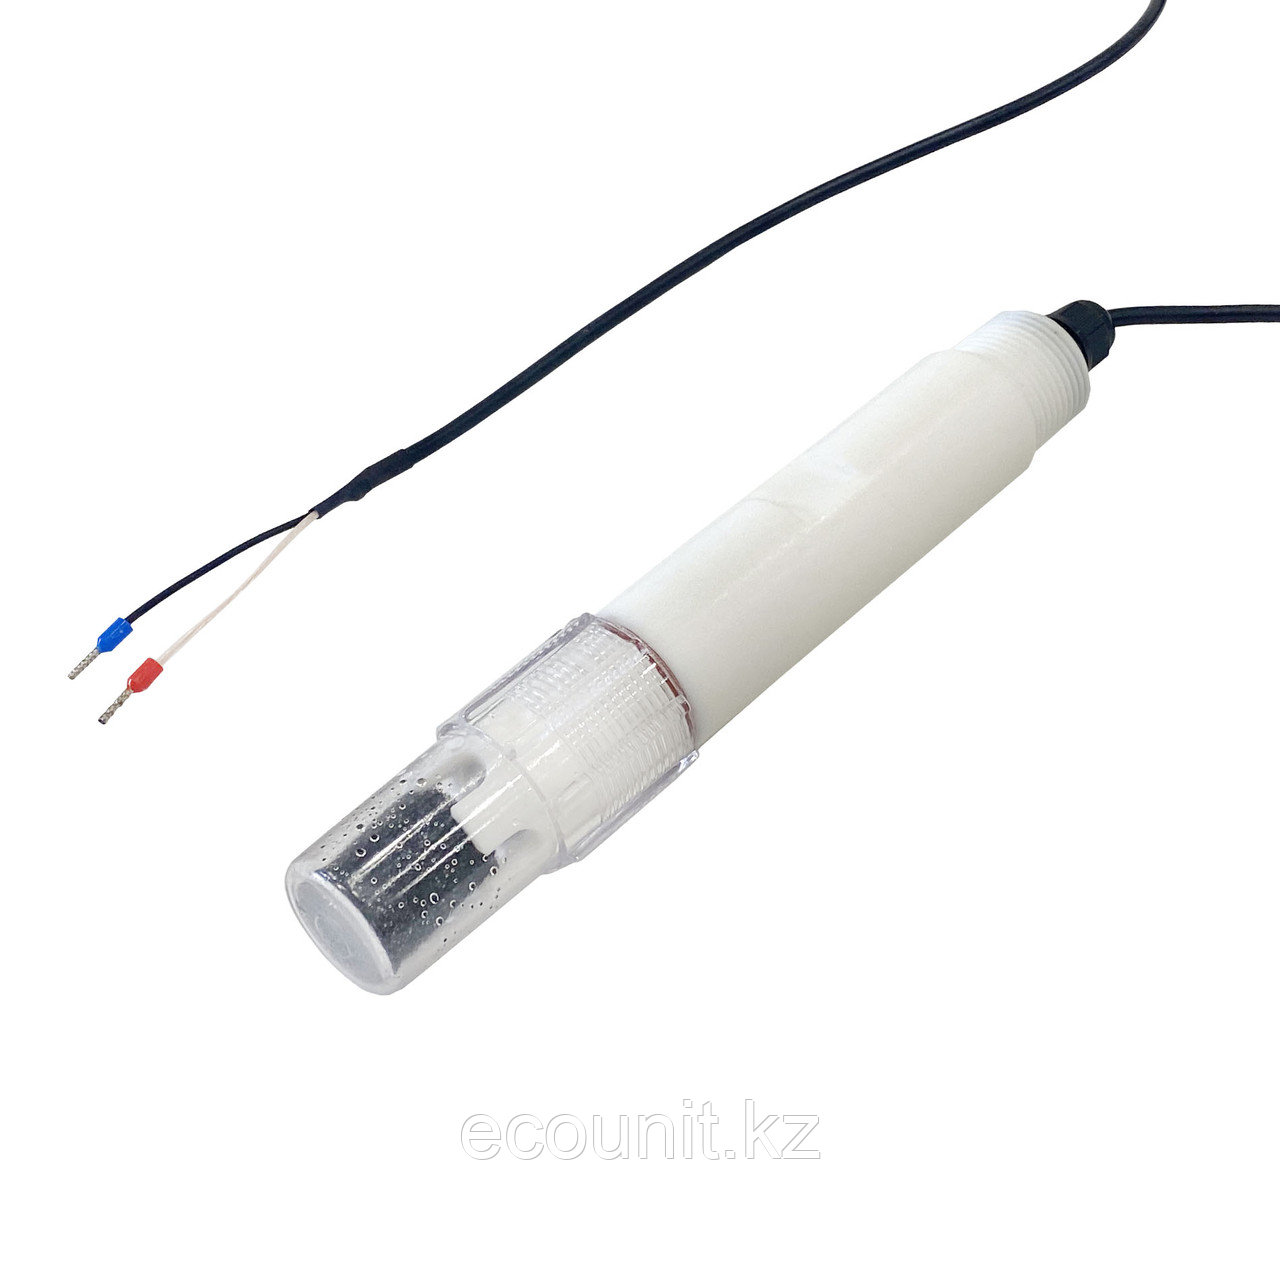 Apure GRT1010J Промышленный тефлоновый pH электрод для органики (0-60°C, кабель 5м) GRT1010J